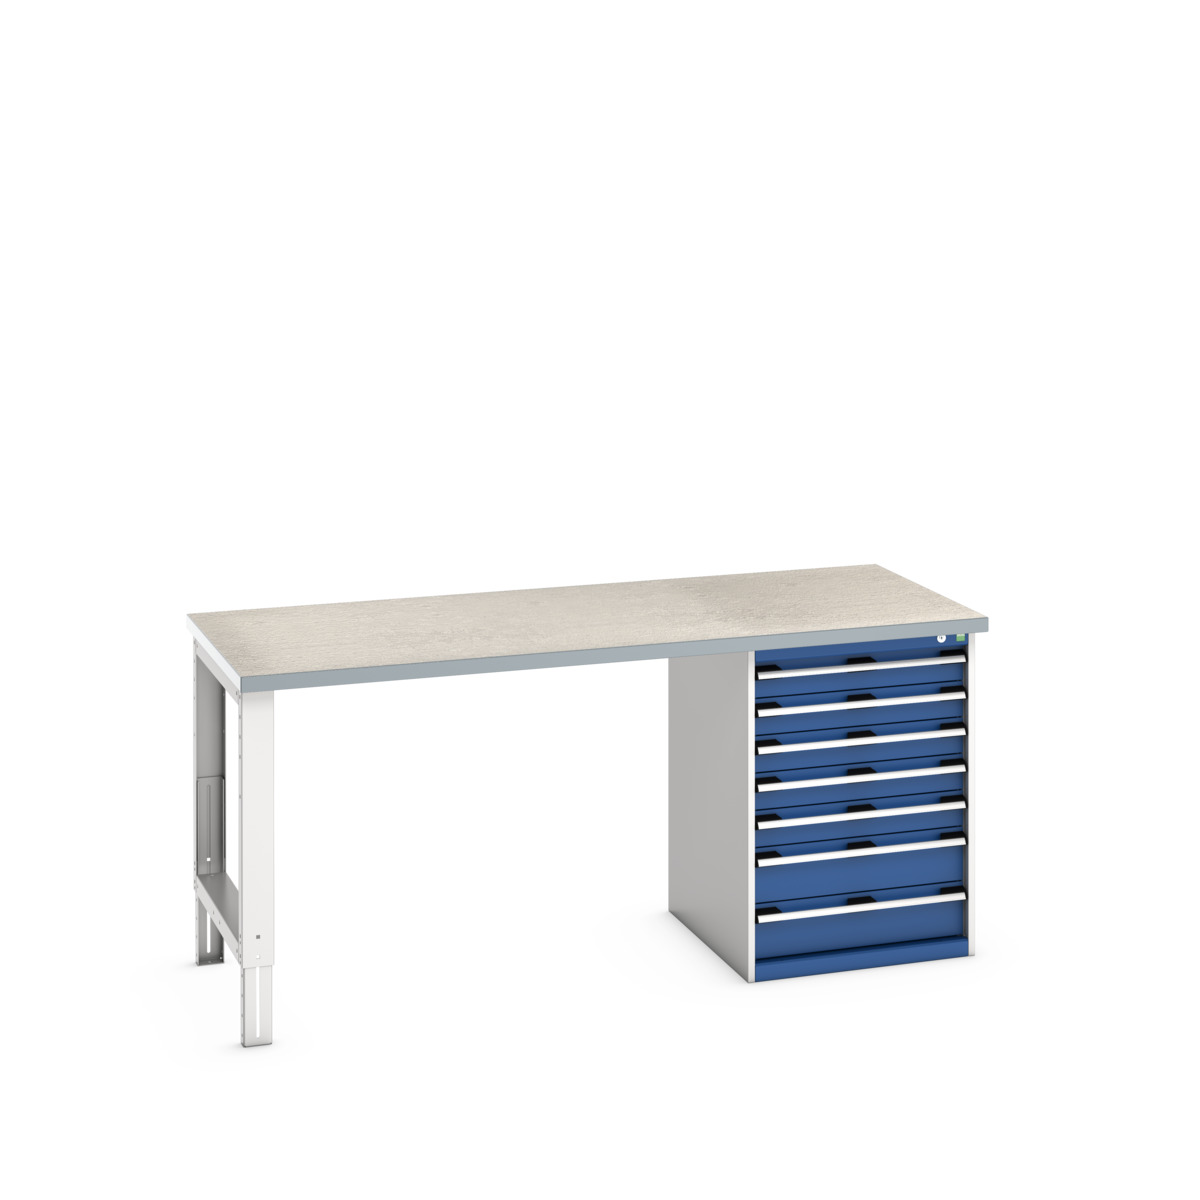 41004124.11V - cubio pedestal bench (lino)